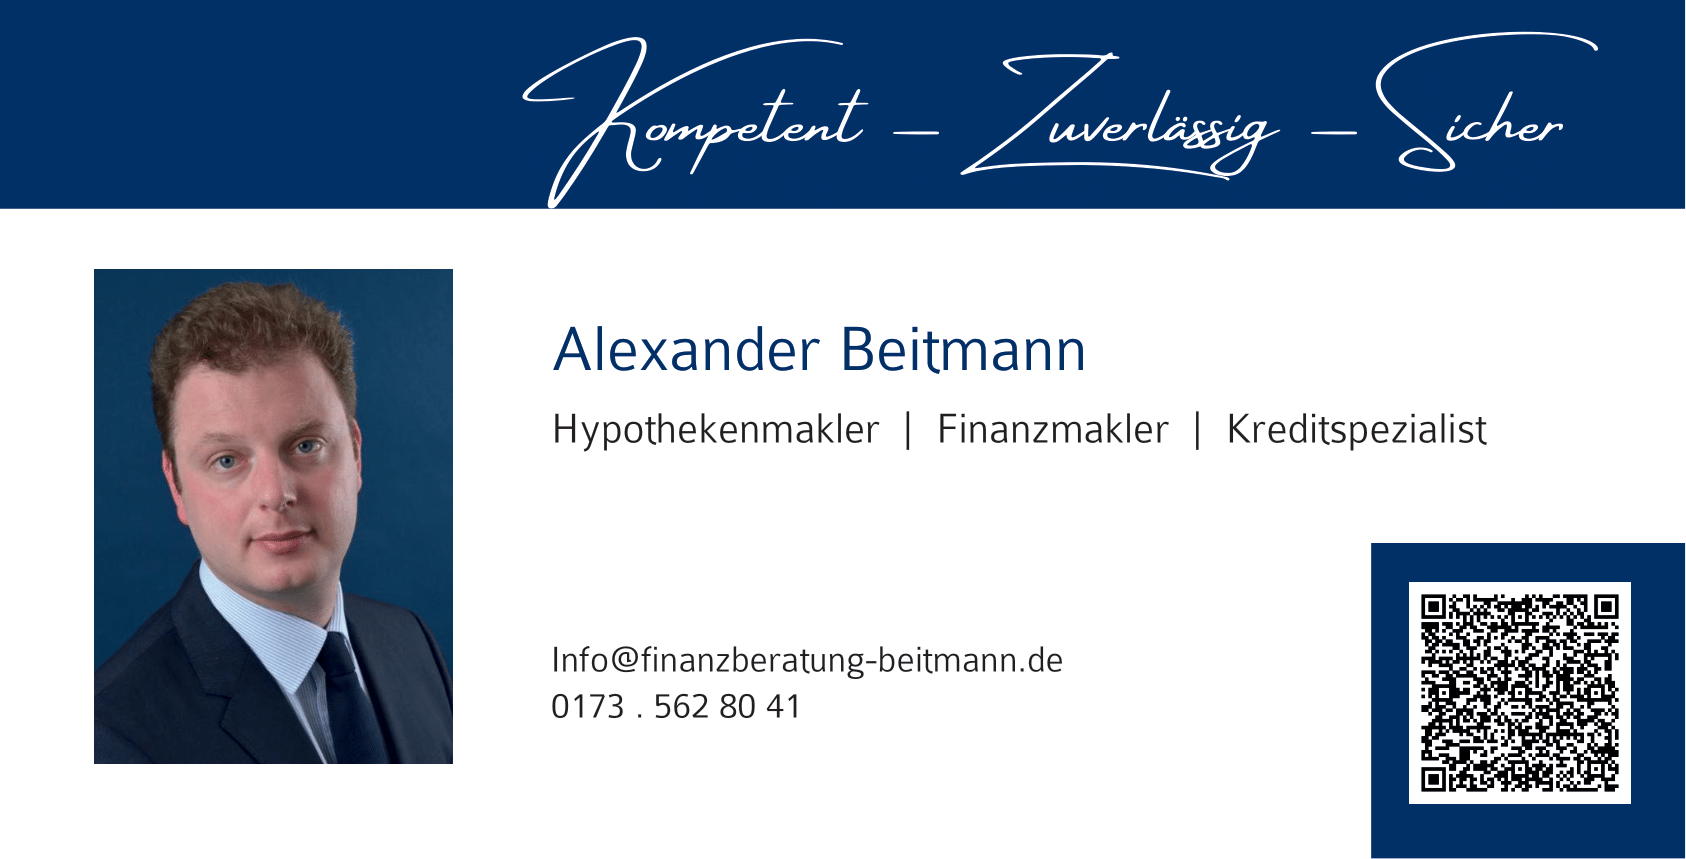 Alexander Beitmann